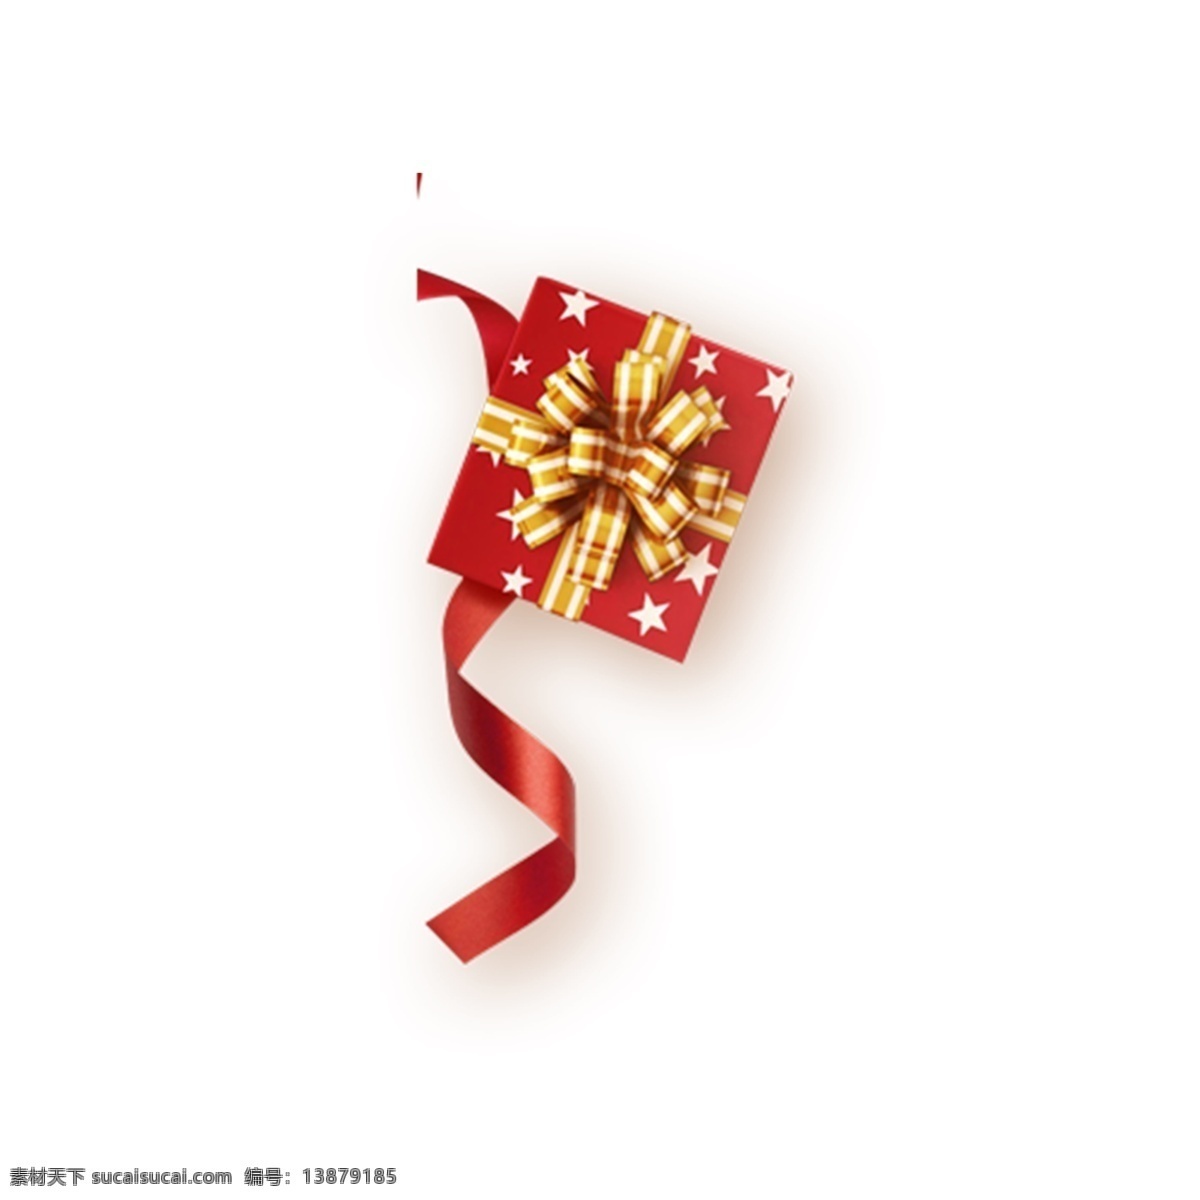 红色礼物盒 礼物 节日礼物 淘宝 天猫 电商 卡通插图 创意卡通下载 插图 png图下载